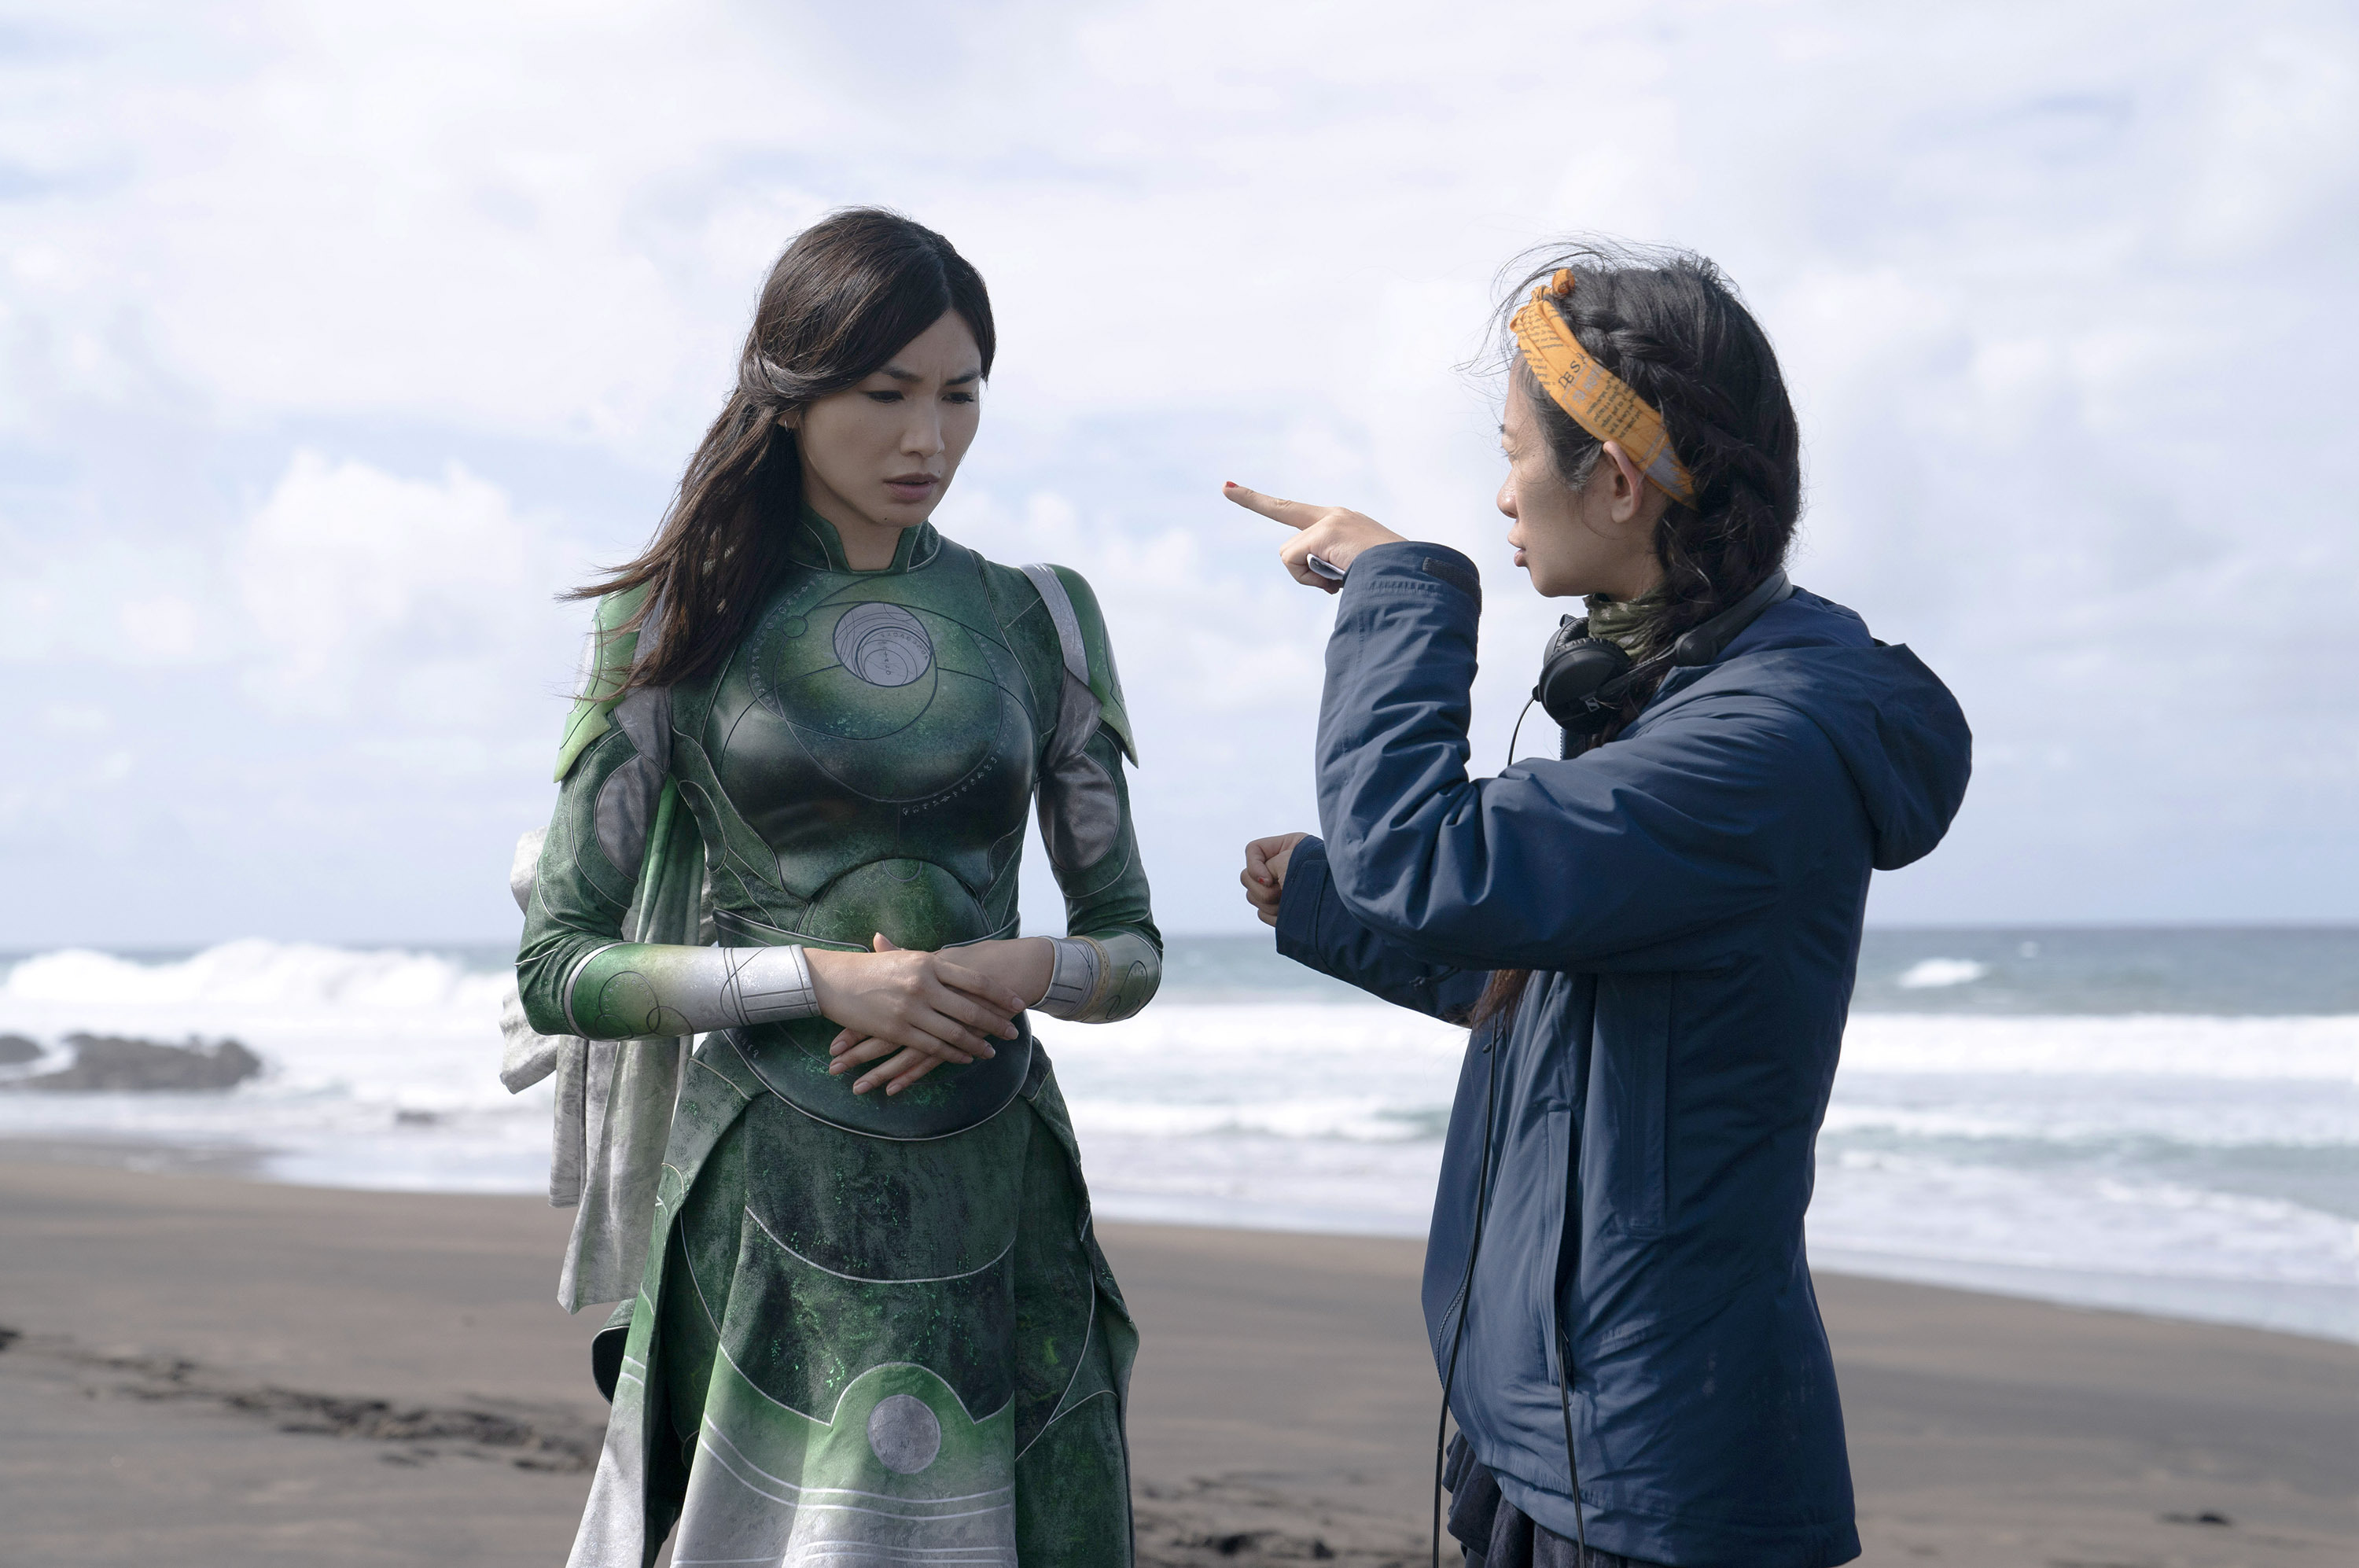 La actriz Gemma Chan recibe indicaciones de Chloé Zhao durante el rodaje de 'Eternals'.